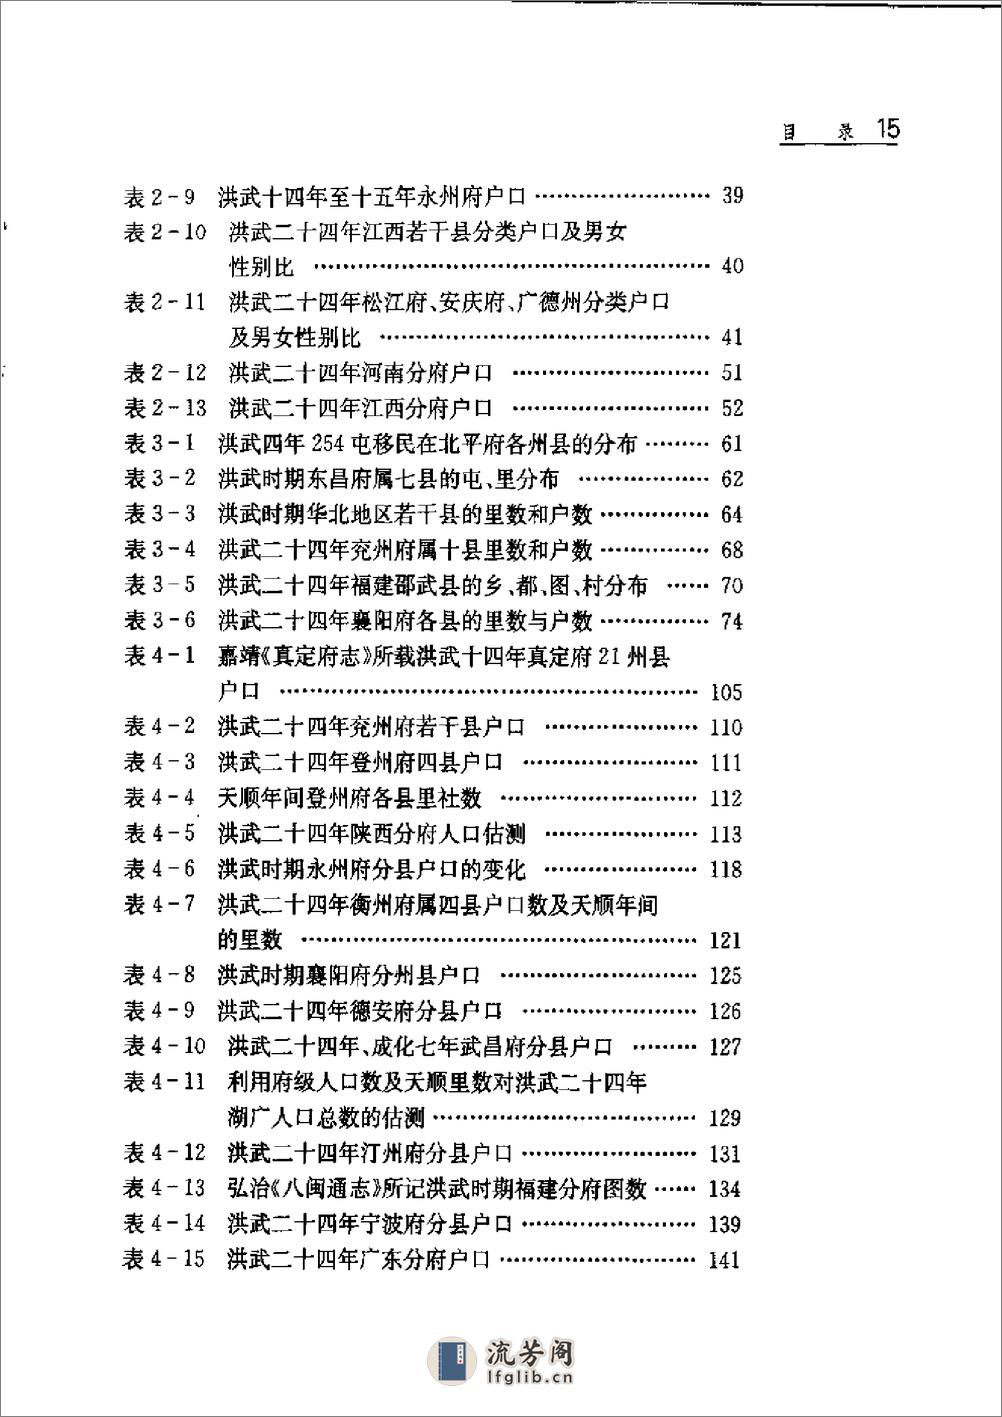 中国人口史 第4卷 明时期 - 第20页预览图